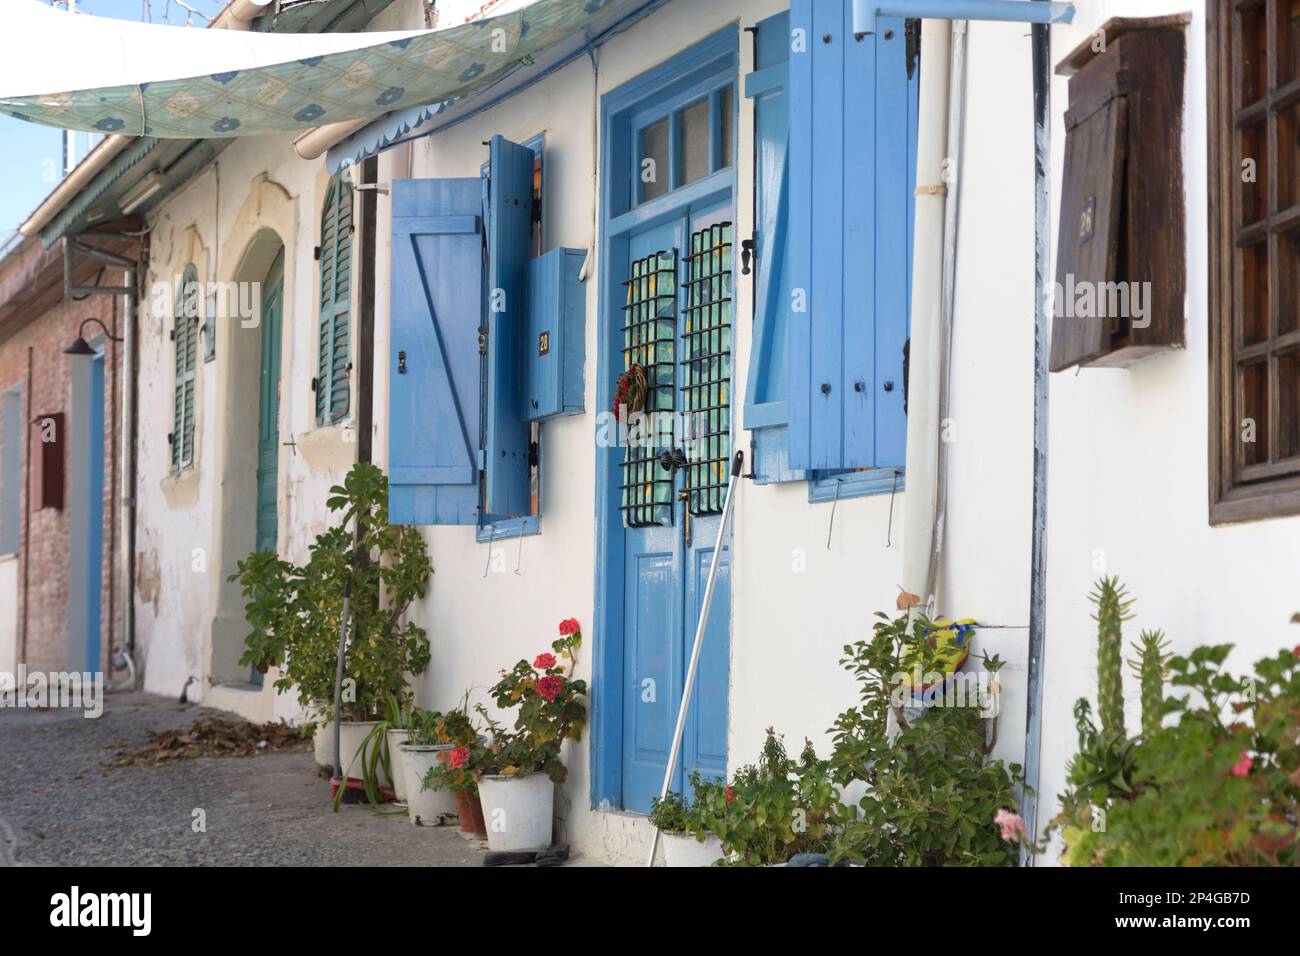 Zypern, Omodos, die blauen und weißen Häuser, ein gemeinsames Thema in ganz Zypern. Stockfoto